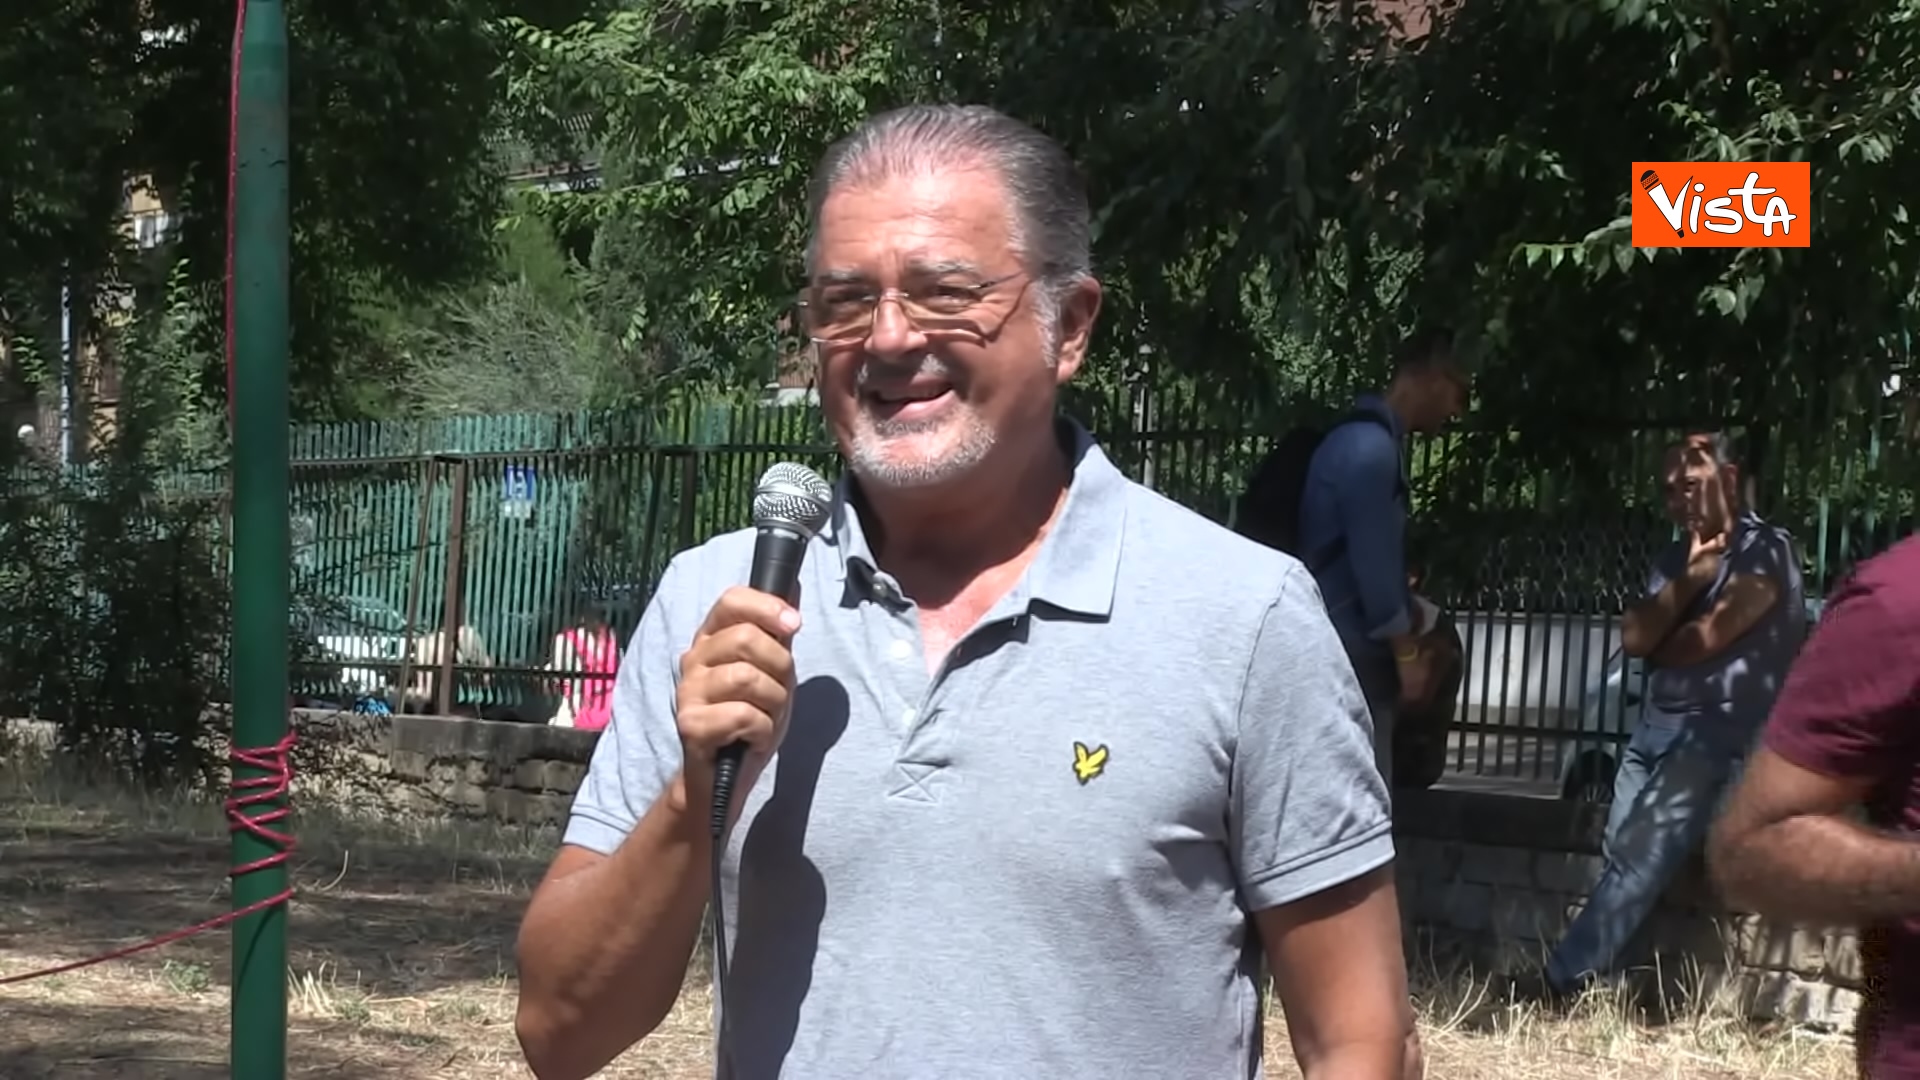 Ilaria Cucchi inizia la campagna elettorale, l'intervento di Fabio Anselmo